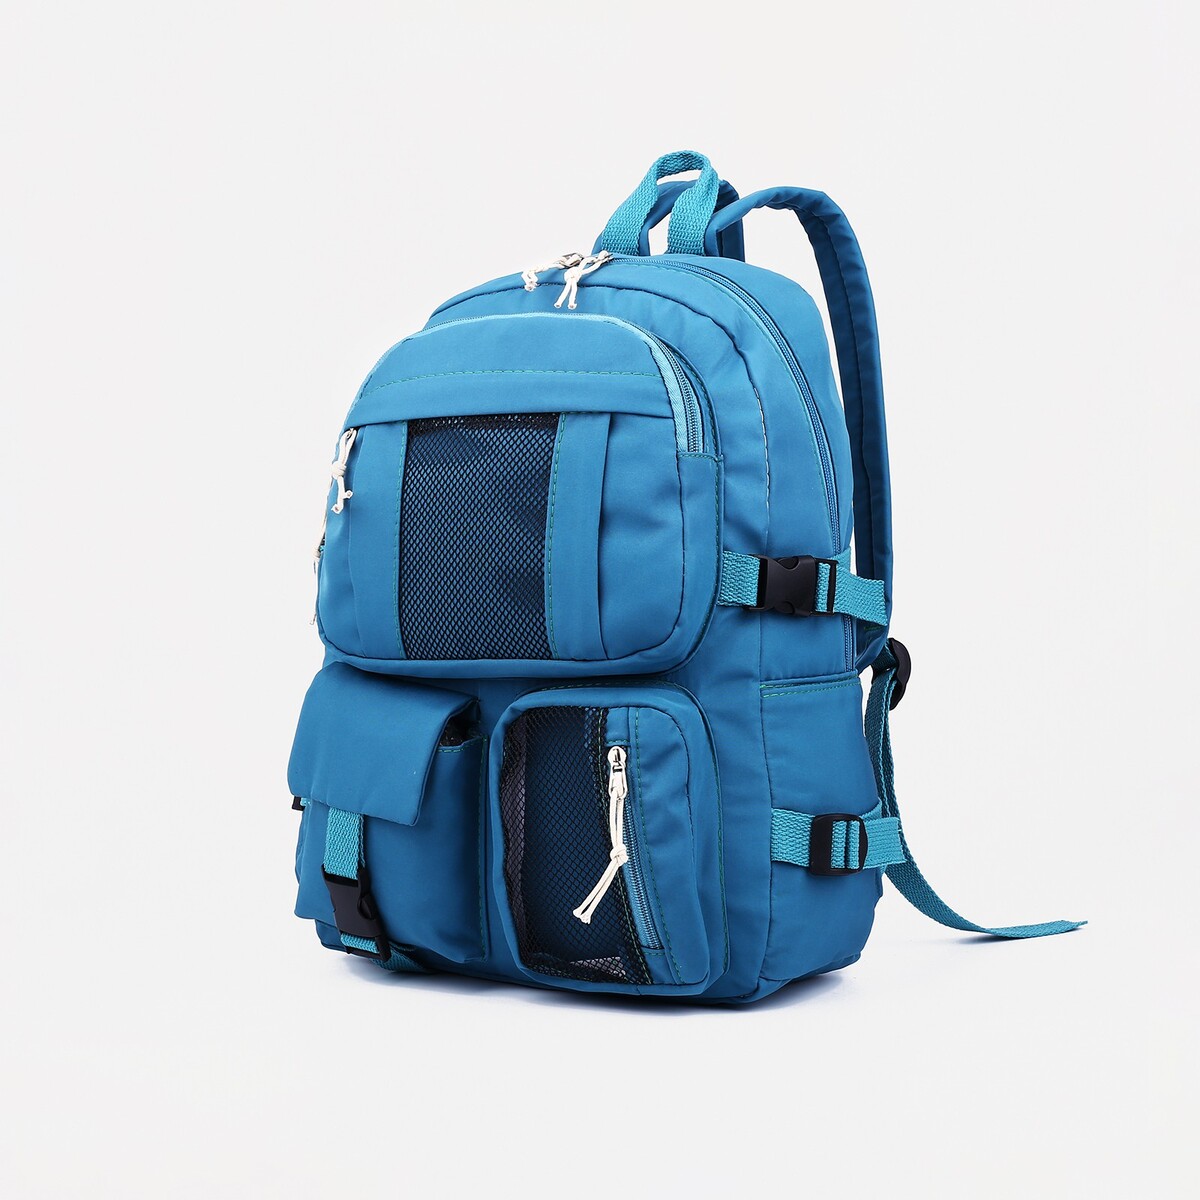 Рюкзак школьный на молнии, 5 наружных карманов, цвет синий рюкзак на молнии 5 наружных карманов пенал бирюзовый